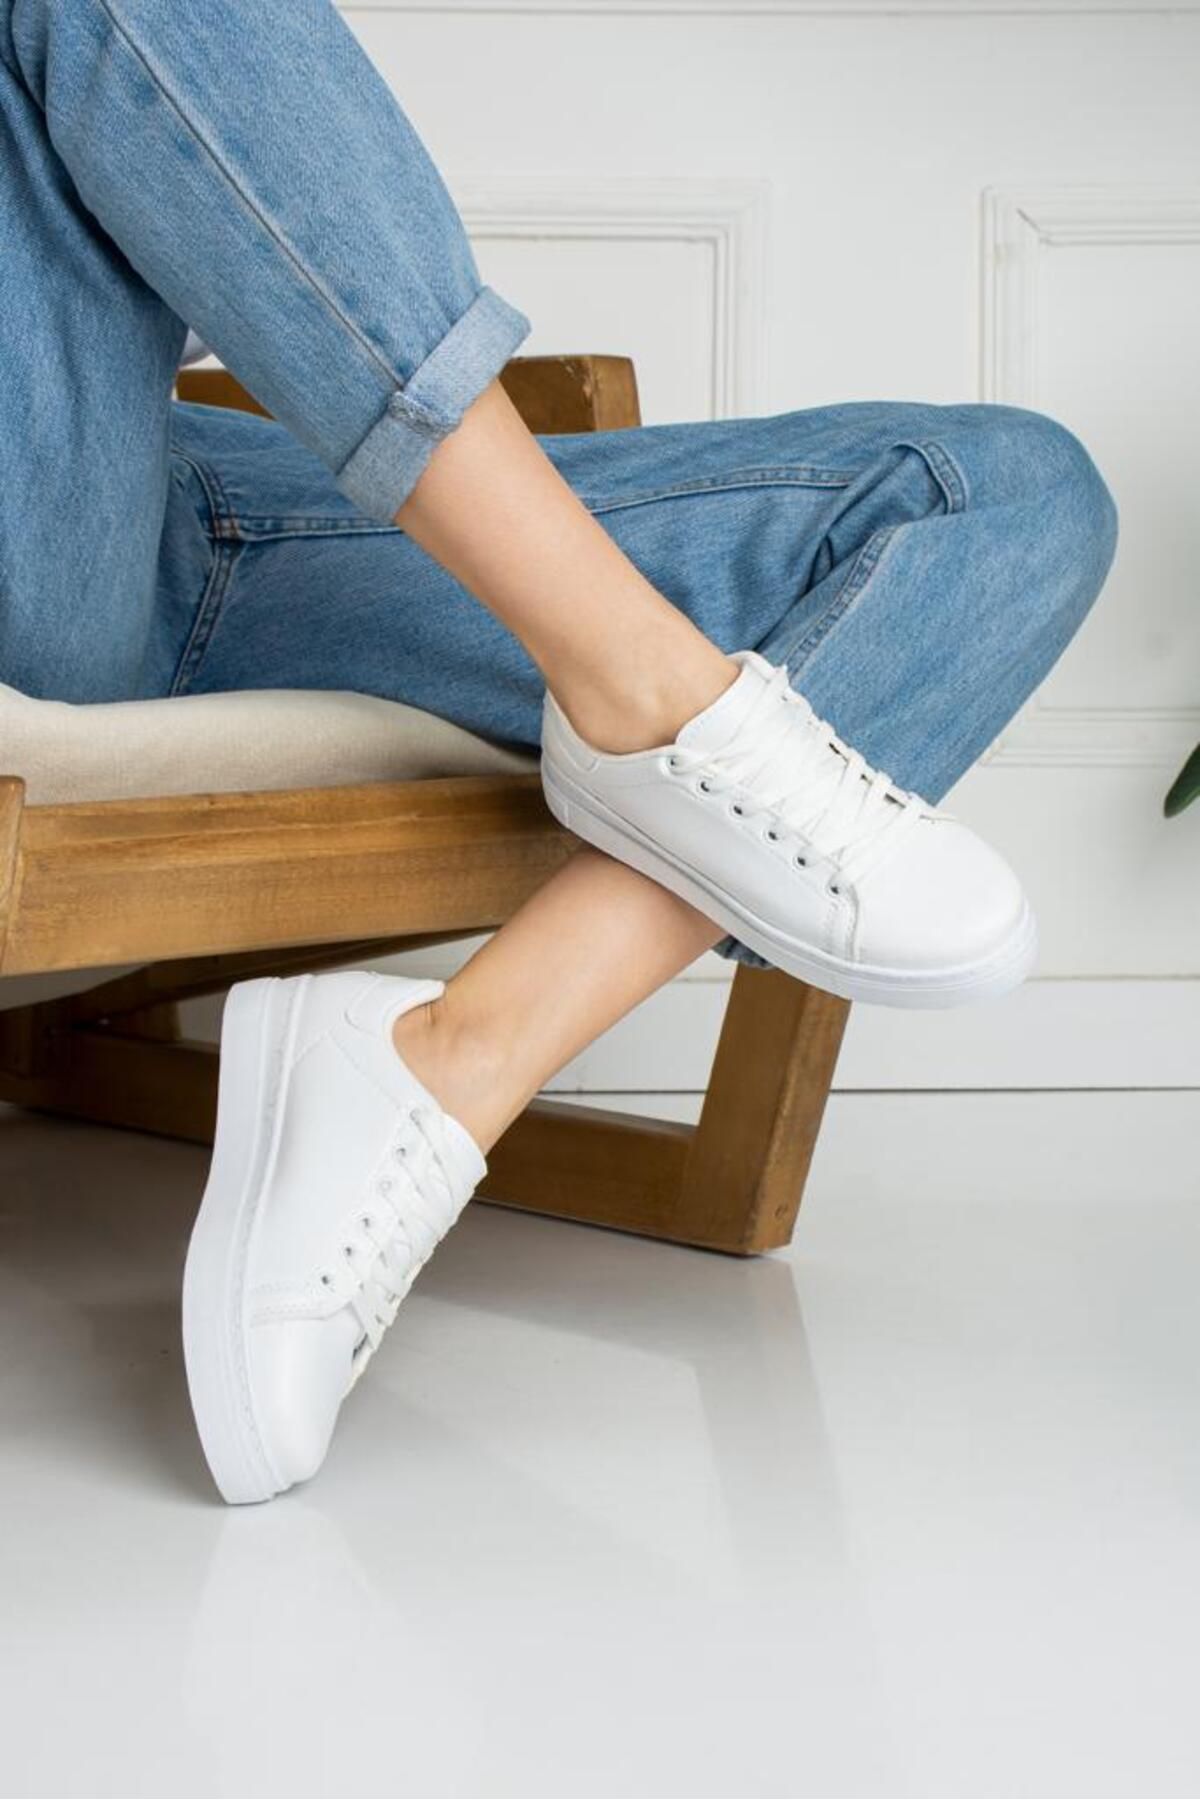 galya shoes Kadın Beyaz Spor Sade Bağcıklı Ayakkabı